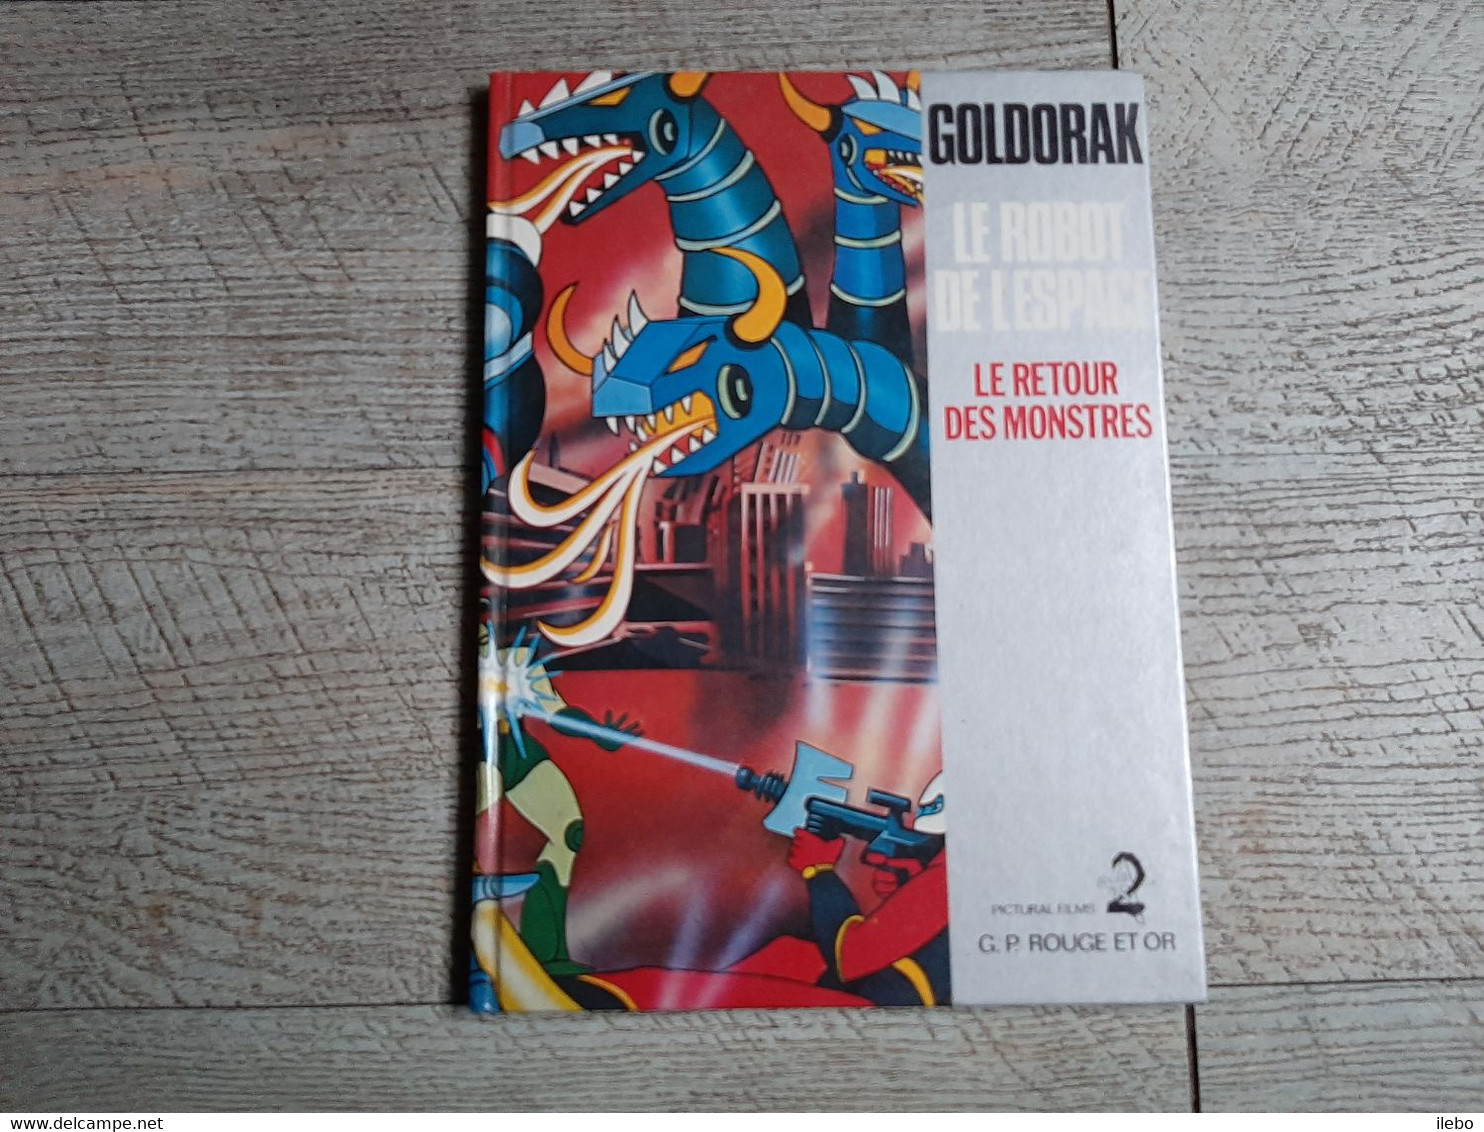 Goldorak Le Robot De L'espace Le Retour Des Monstres 1978 Pictural Films G P Rouge Et Or - Bibliothèque Rouge Et Or